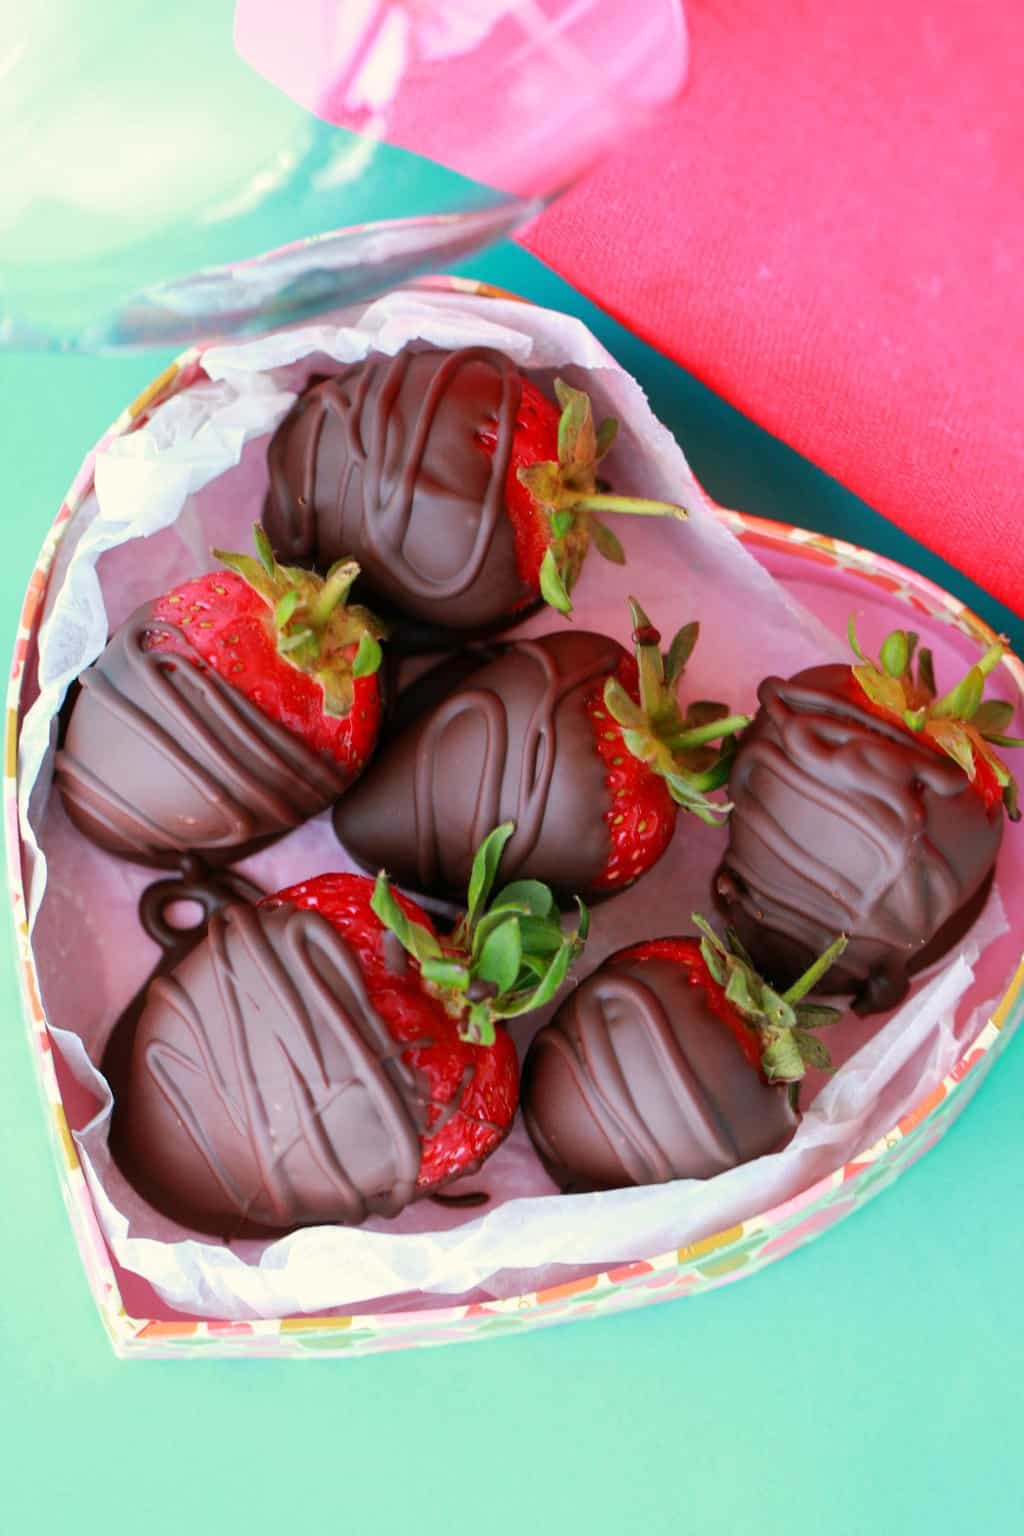 Wegańskie truskawki pokryte czekoladą w pudełku w kształcie serca.